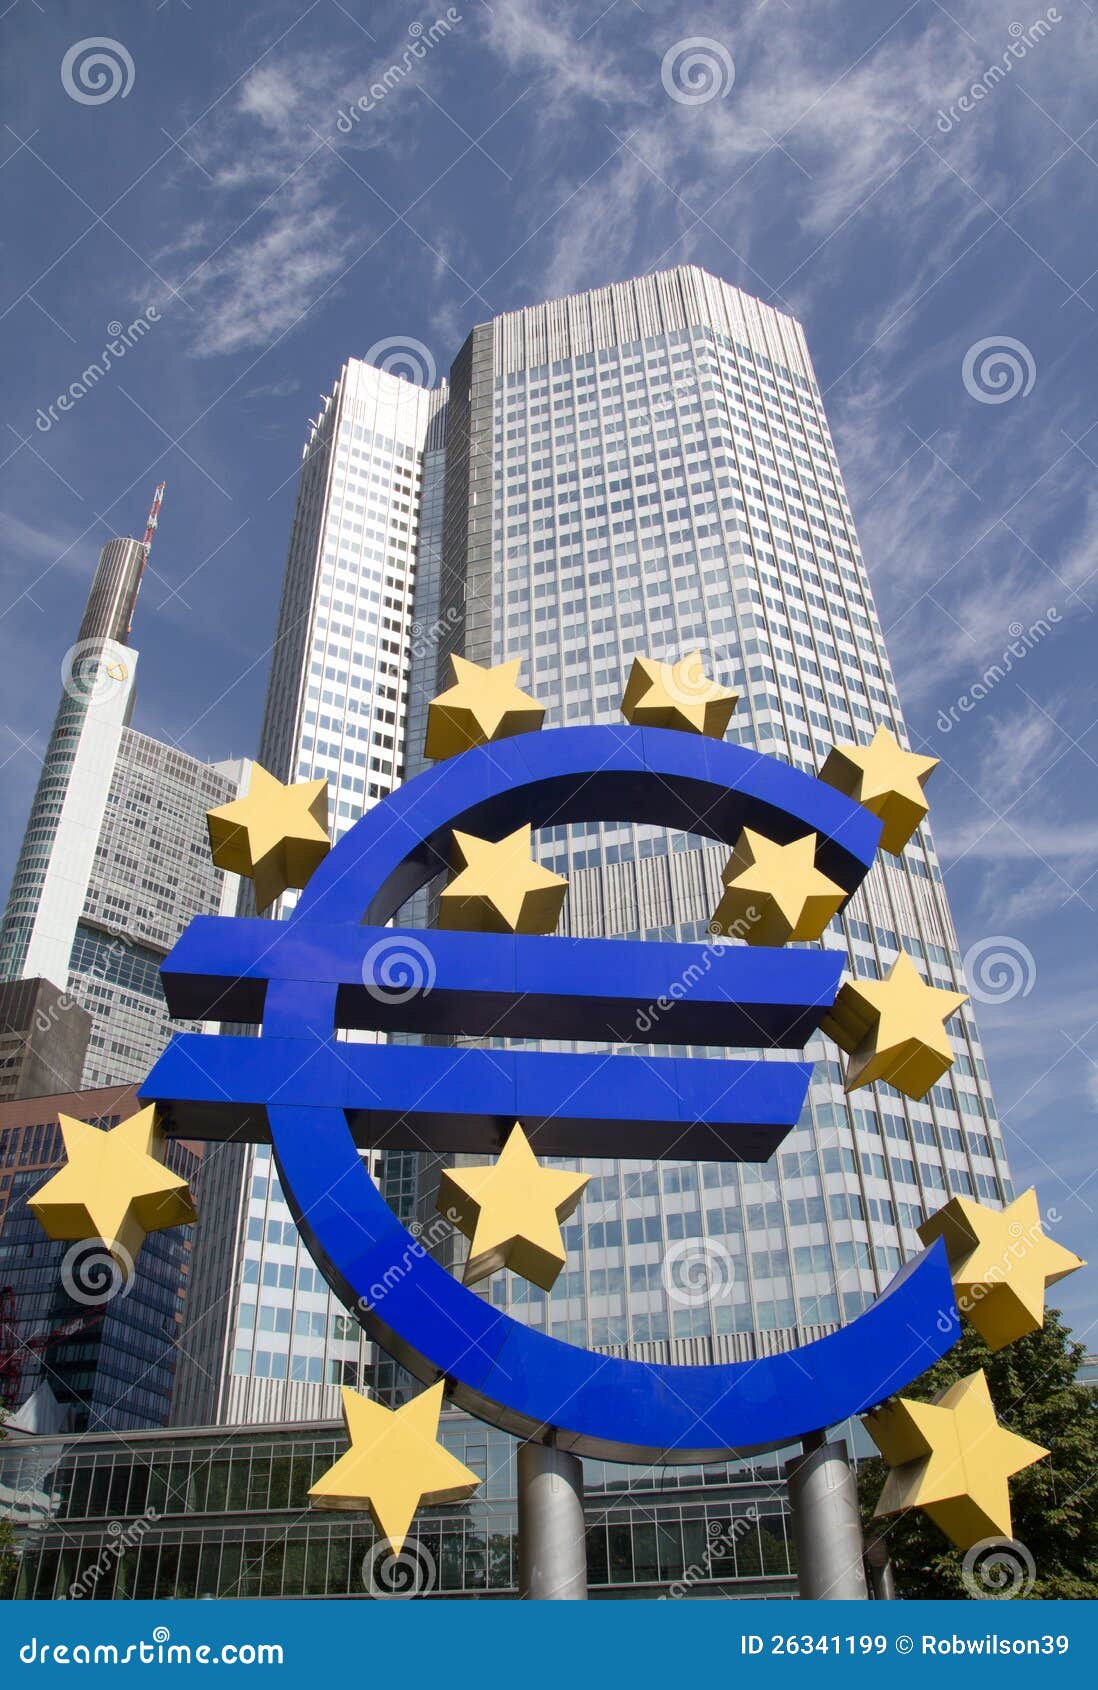 FRANCOFORTE, GERMANIA - 23 AGOSTO: Il grande euro segno famoso alla Banca Centrale Europea il 23 agosto 2012 a Francoforte, Germania. La banca è stata istituita dal Trattato di Amsterdam in 1998.